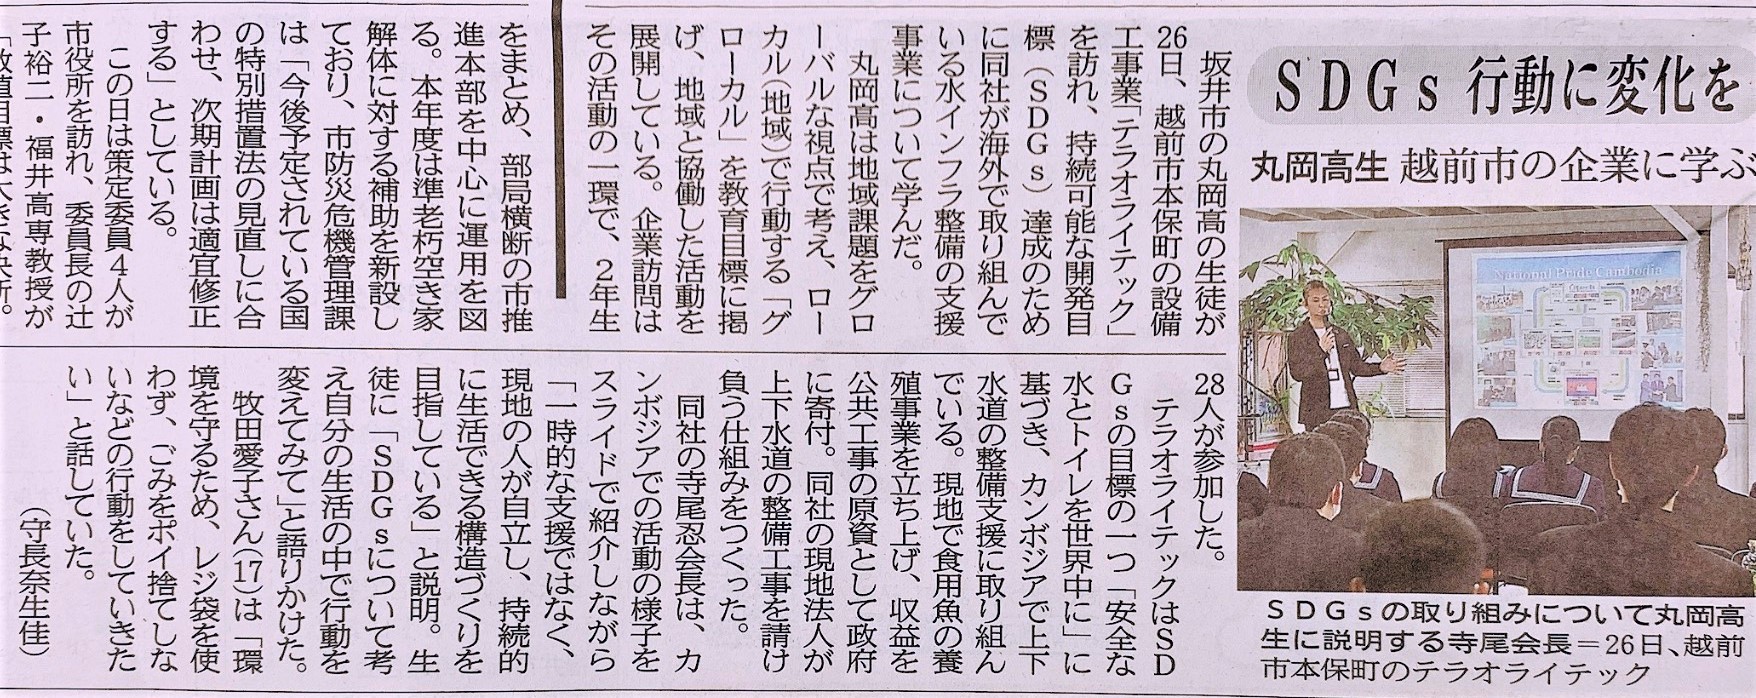 ニュース 福井 新聞 福井県議「ワクチンは殺人兵器」と広報紙で主張 「打てば5年以内に死ぬ」とも